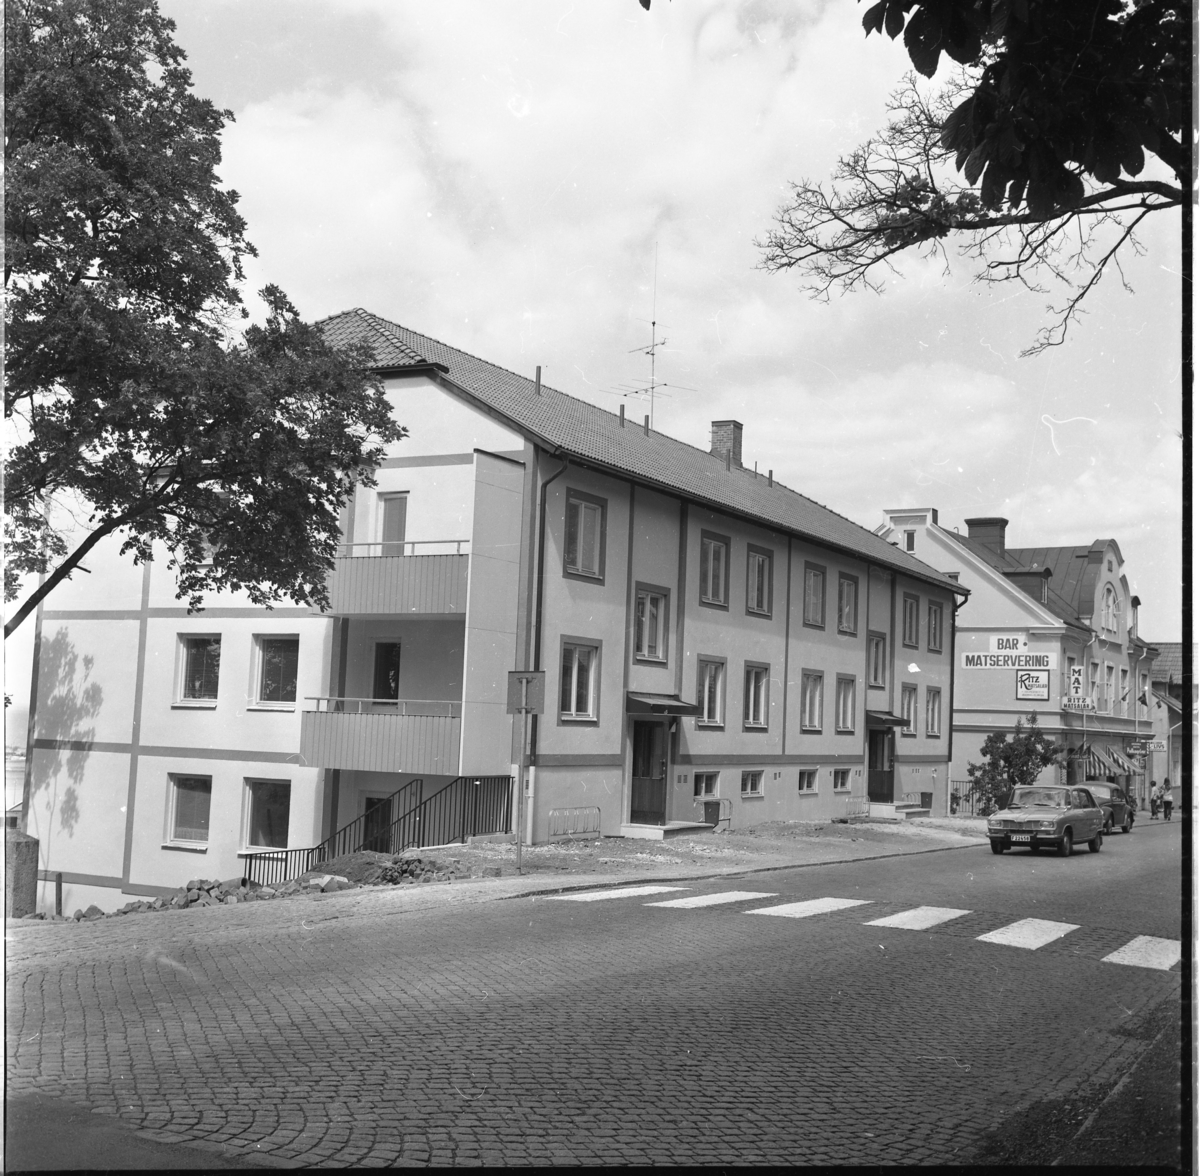 Nybyggt hyreshus på Brahegatan 1 i Gränna. Längre ner på gatan skyltas för Ritz Matsalar, mat och polkagrisar. En bil (Simca?) är på väg ut ur staden.